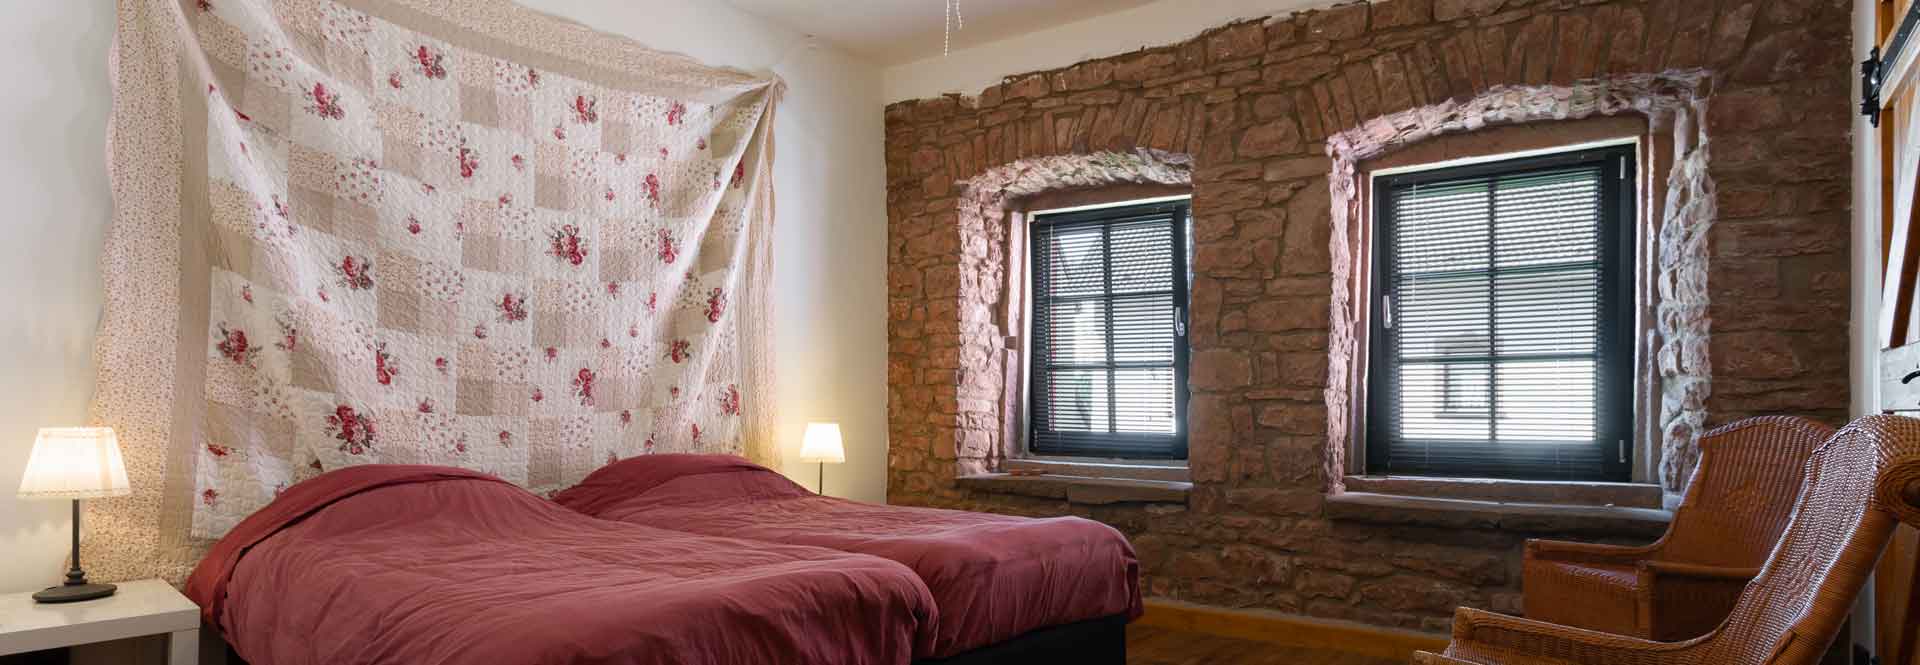 romantische slaapkamer met authentieke muren